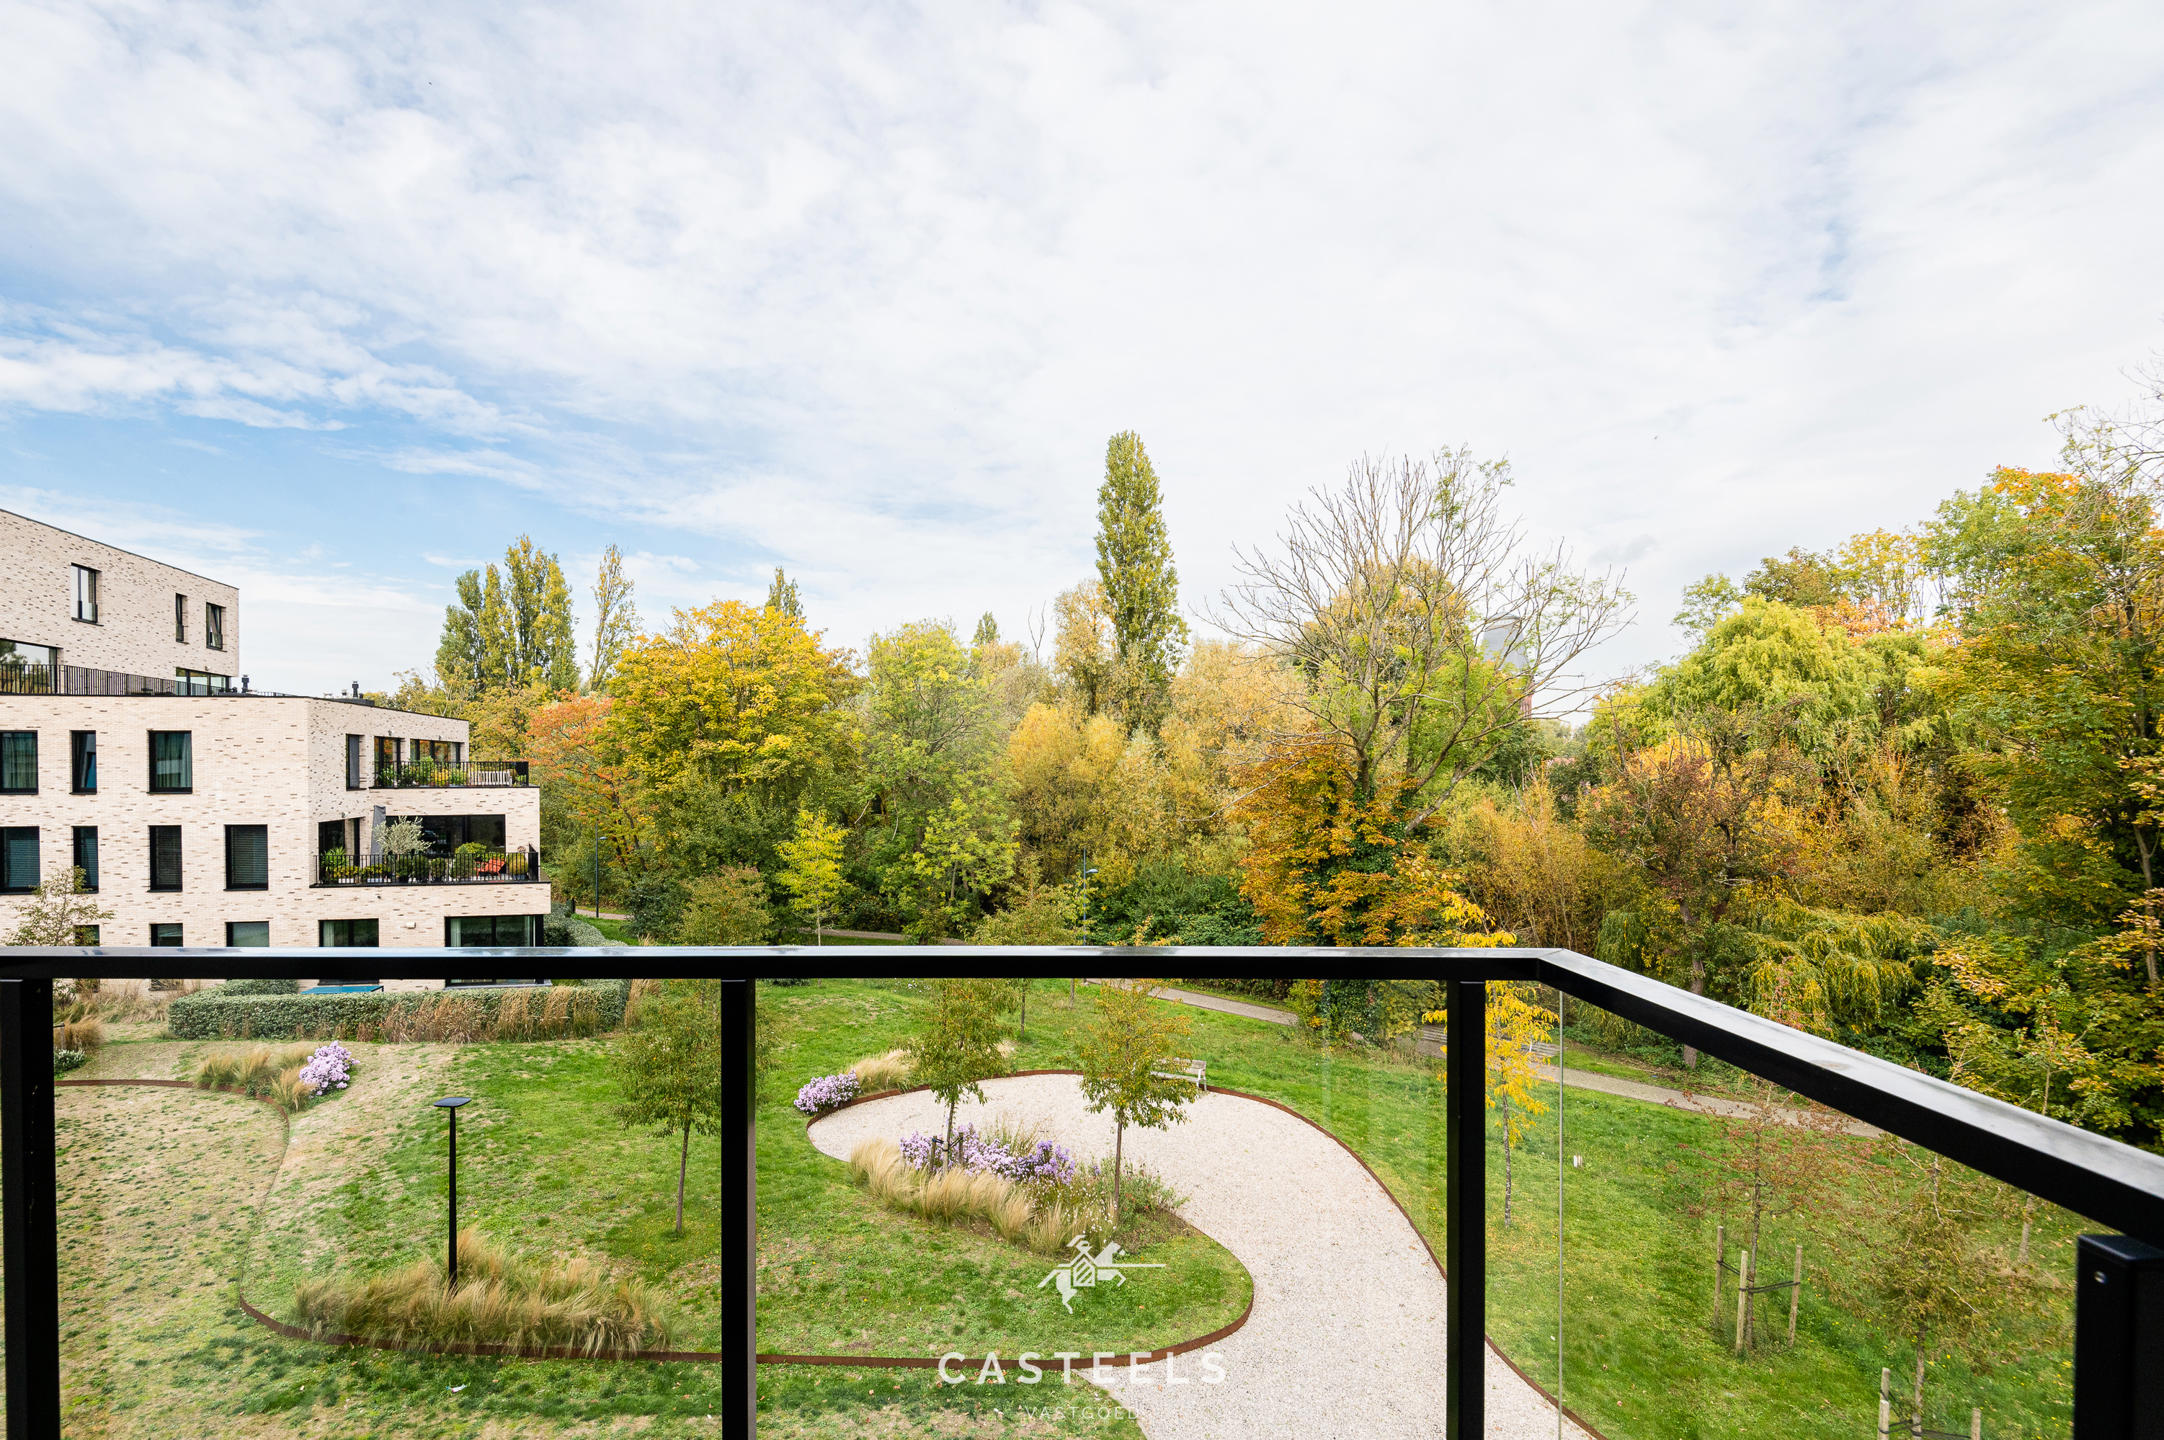 Afbeelding Triplex parkappartement met een prachtig uitzicht te Gent. - Casteels Vastgoed